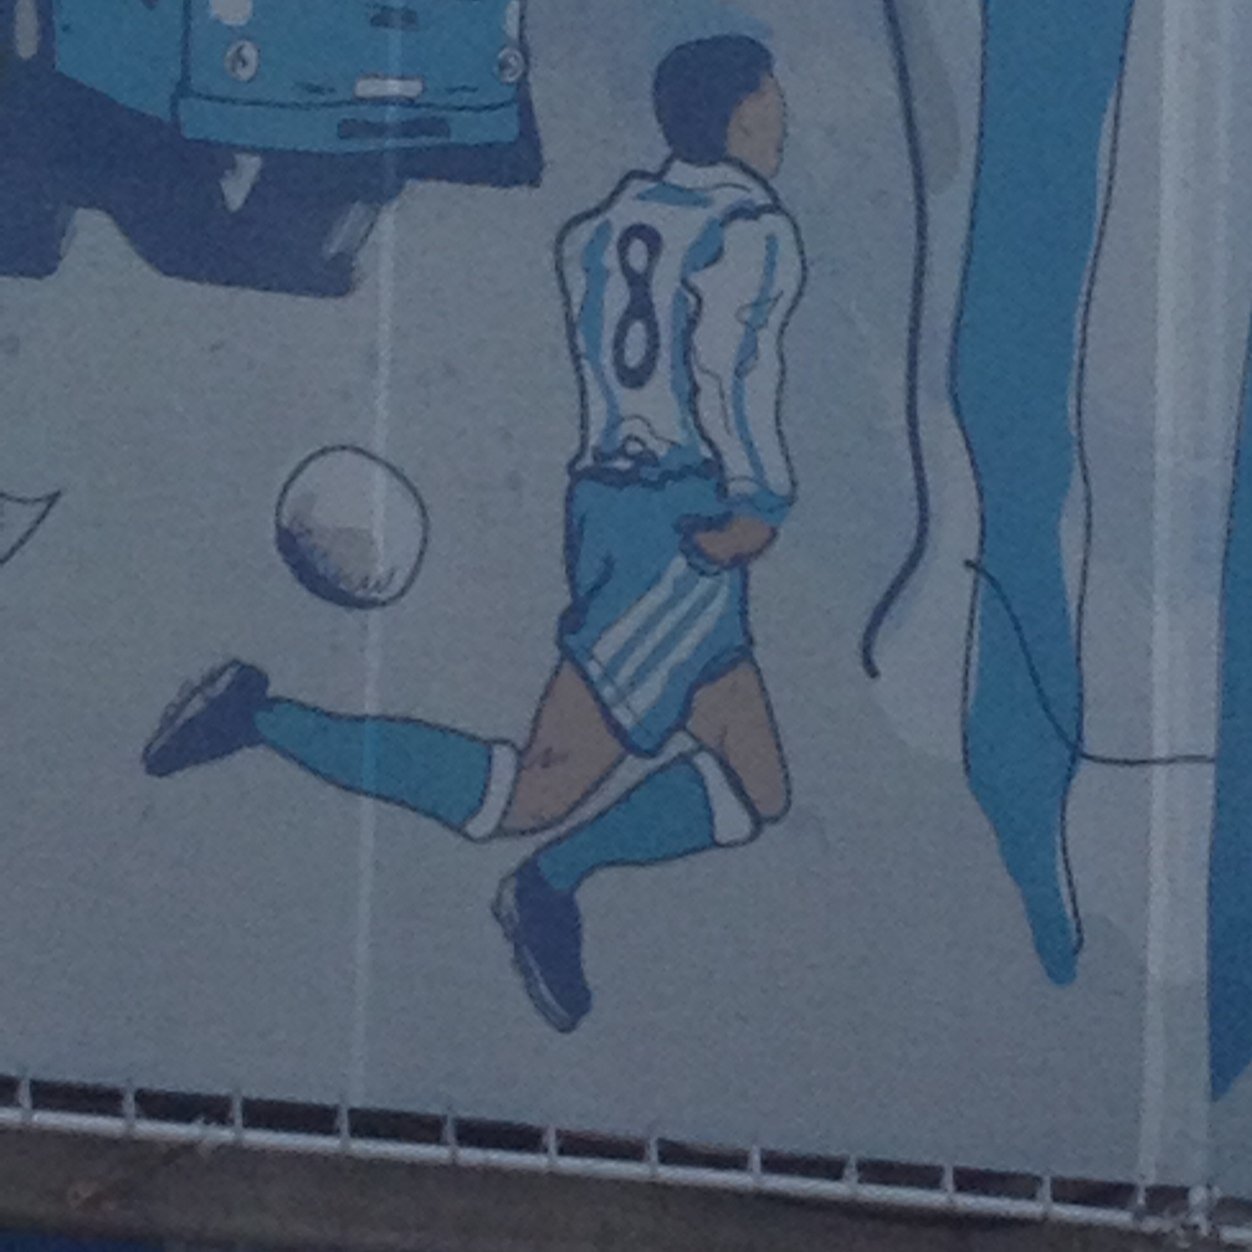 El mejor fútbol el fútbol base. Siempre Deportivista - Deportivo de la Coruña - Arsenal. Instagram: platasvb Mago Djalminha!